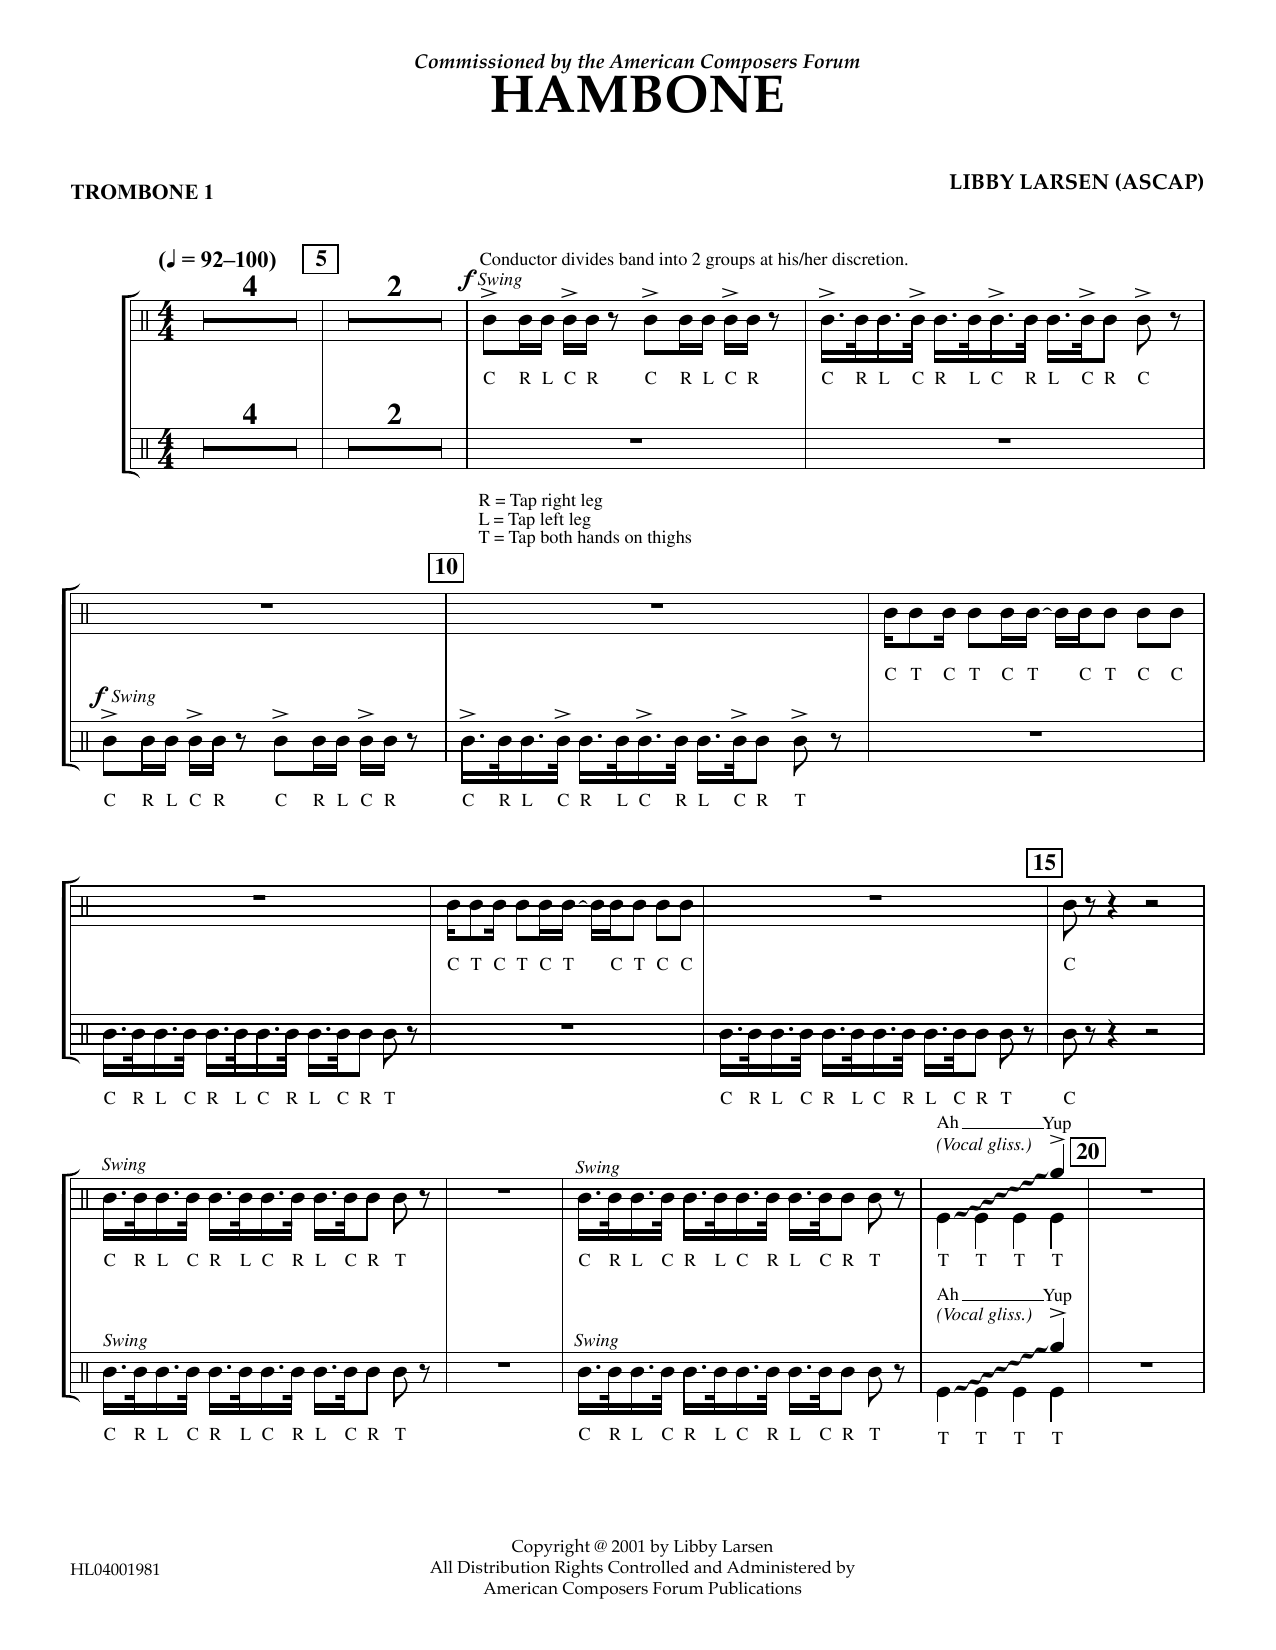 Download Libby Larsen Hambone - Trombone 1 Sheet Music